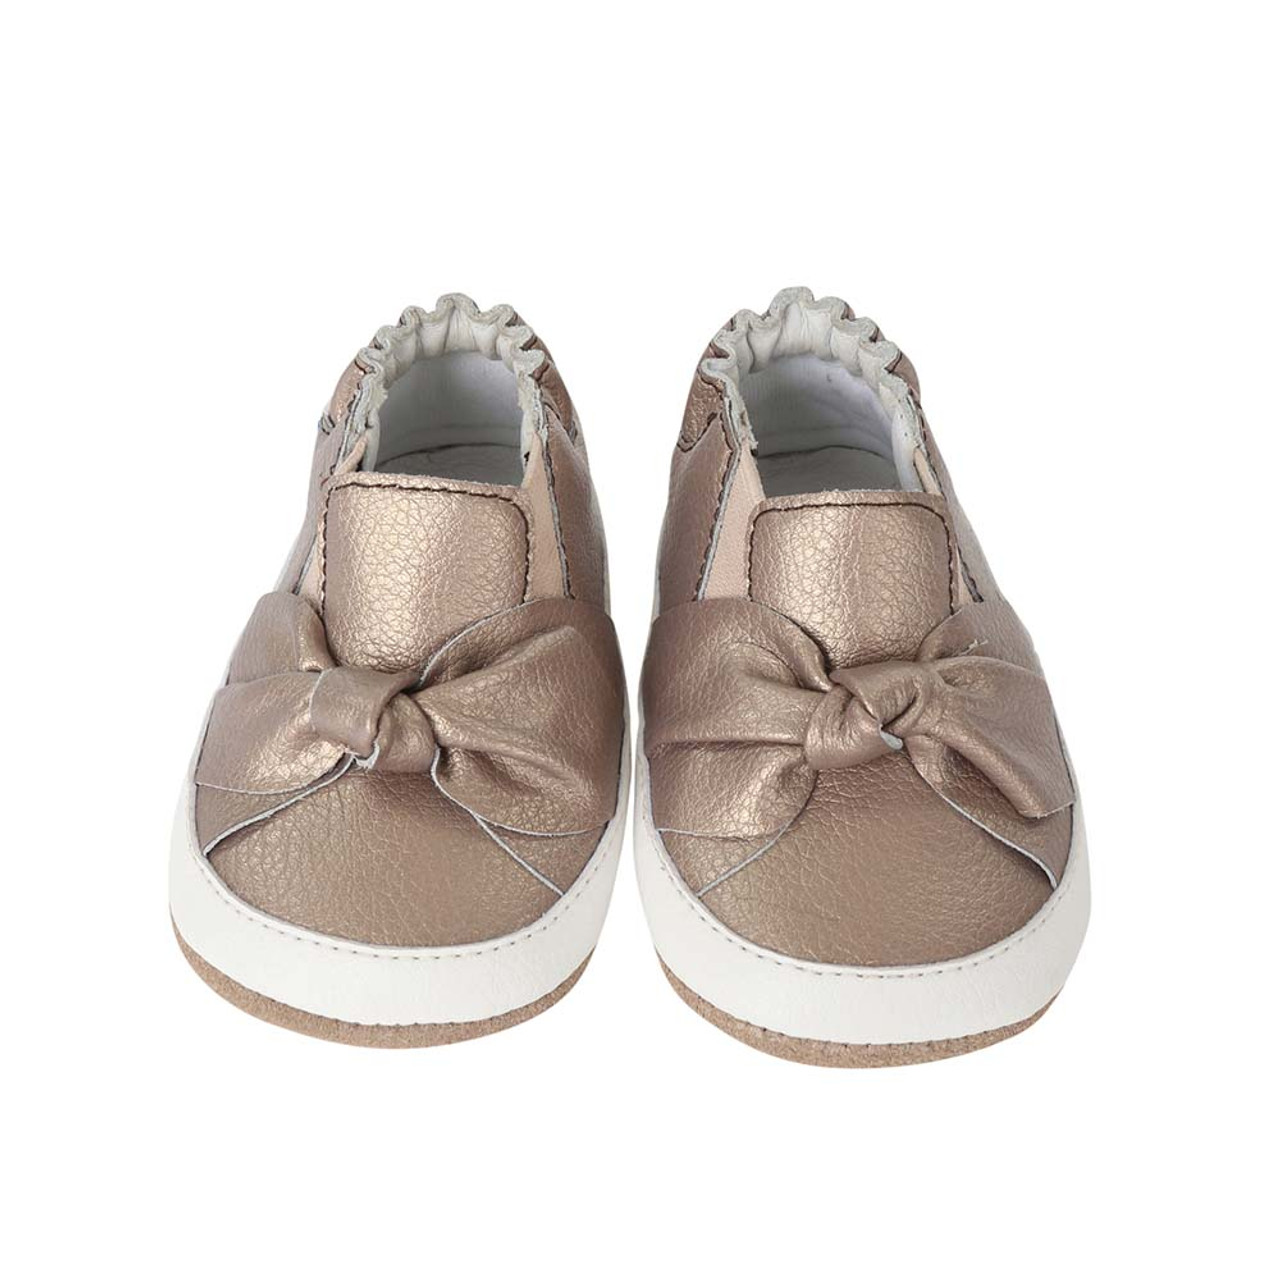 Bella's Bow | Mini Shoez | Baby Shoes 